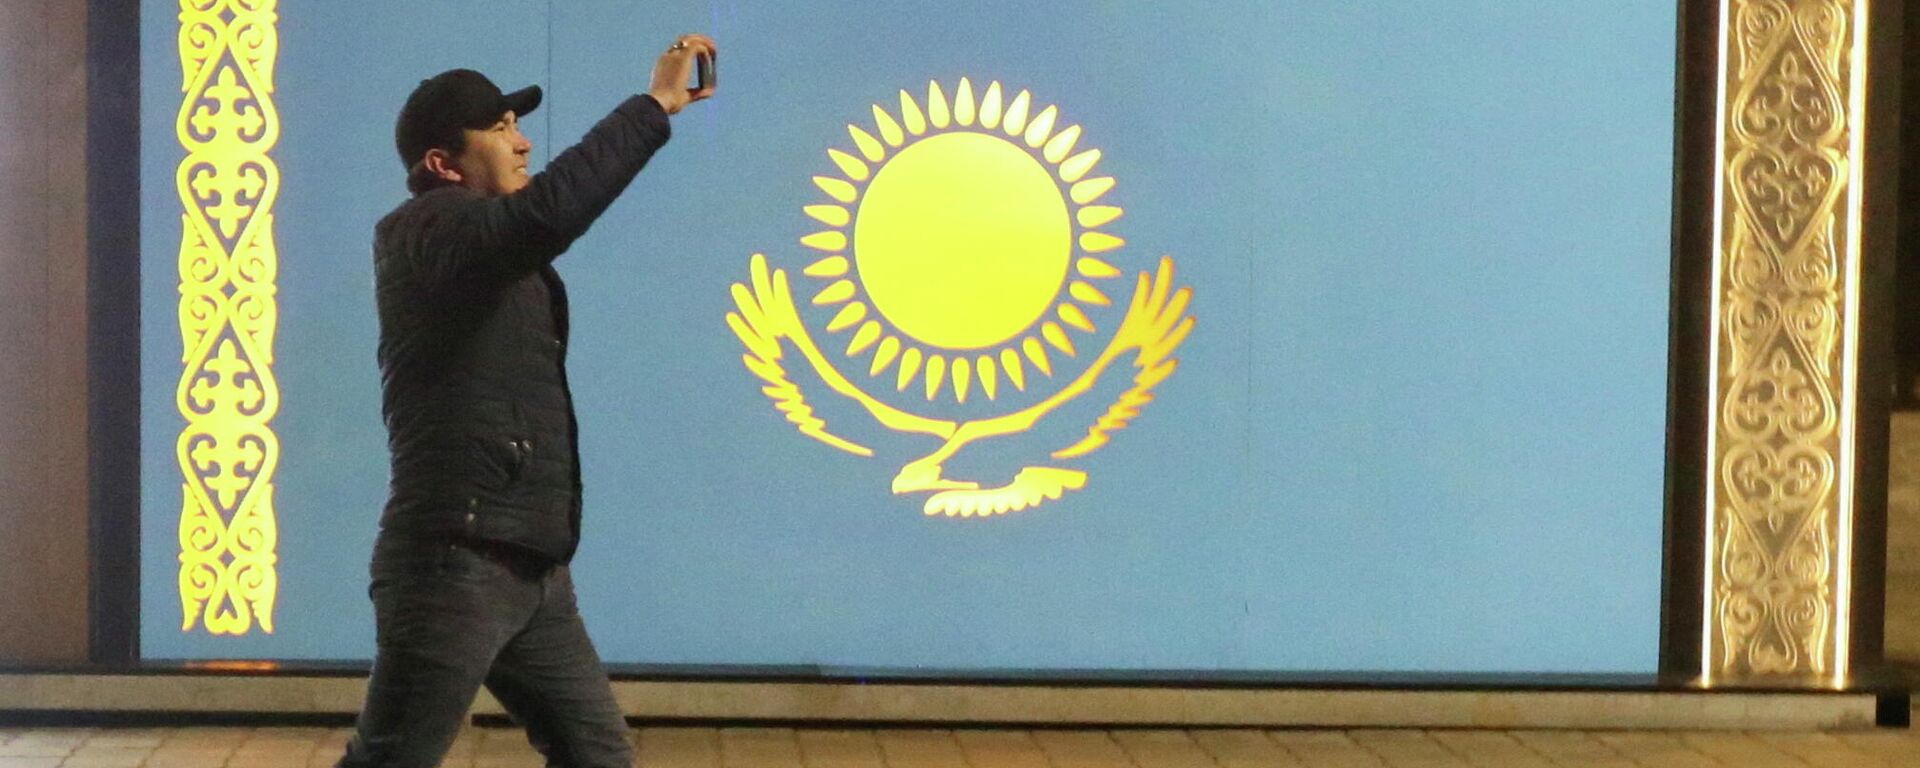 Мужчина проходит мимо флага Казахстана во время акции протеста против повышения цен сжиженного газа в Алматы, Казахстан. 5 января 2022 года - Sputnik Кыргызстан, 1920, 05.01.2022